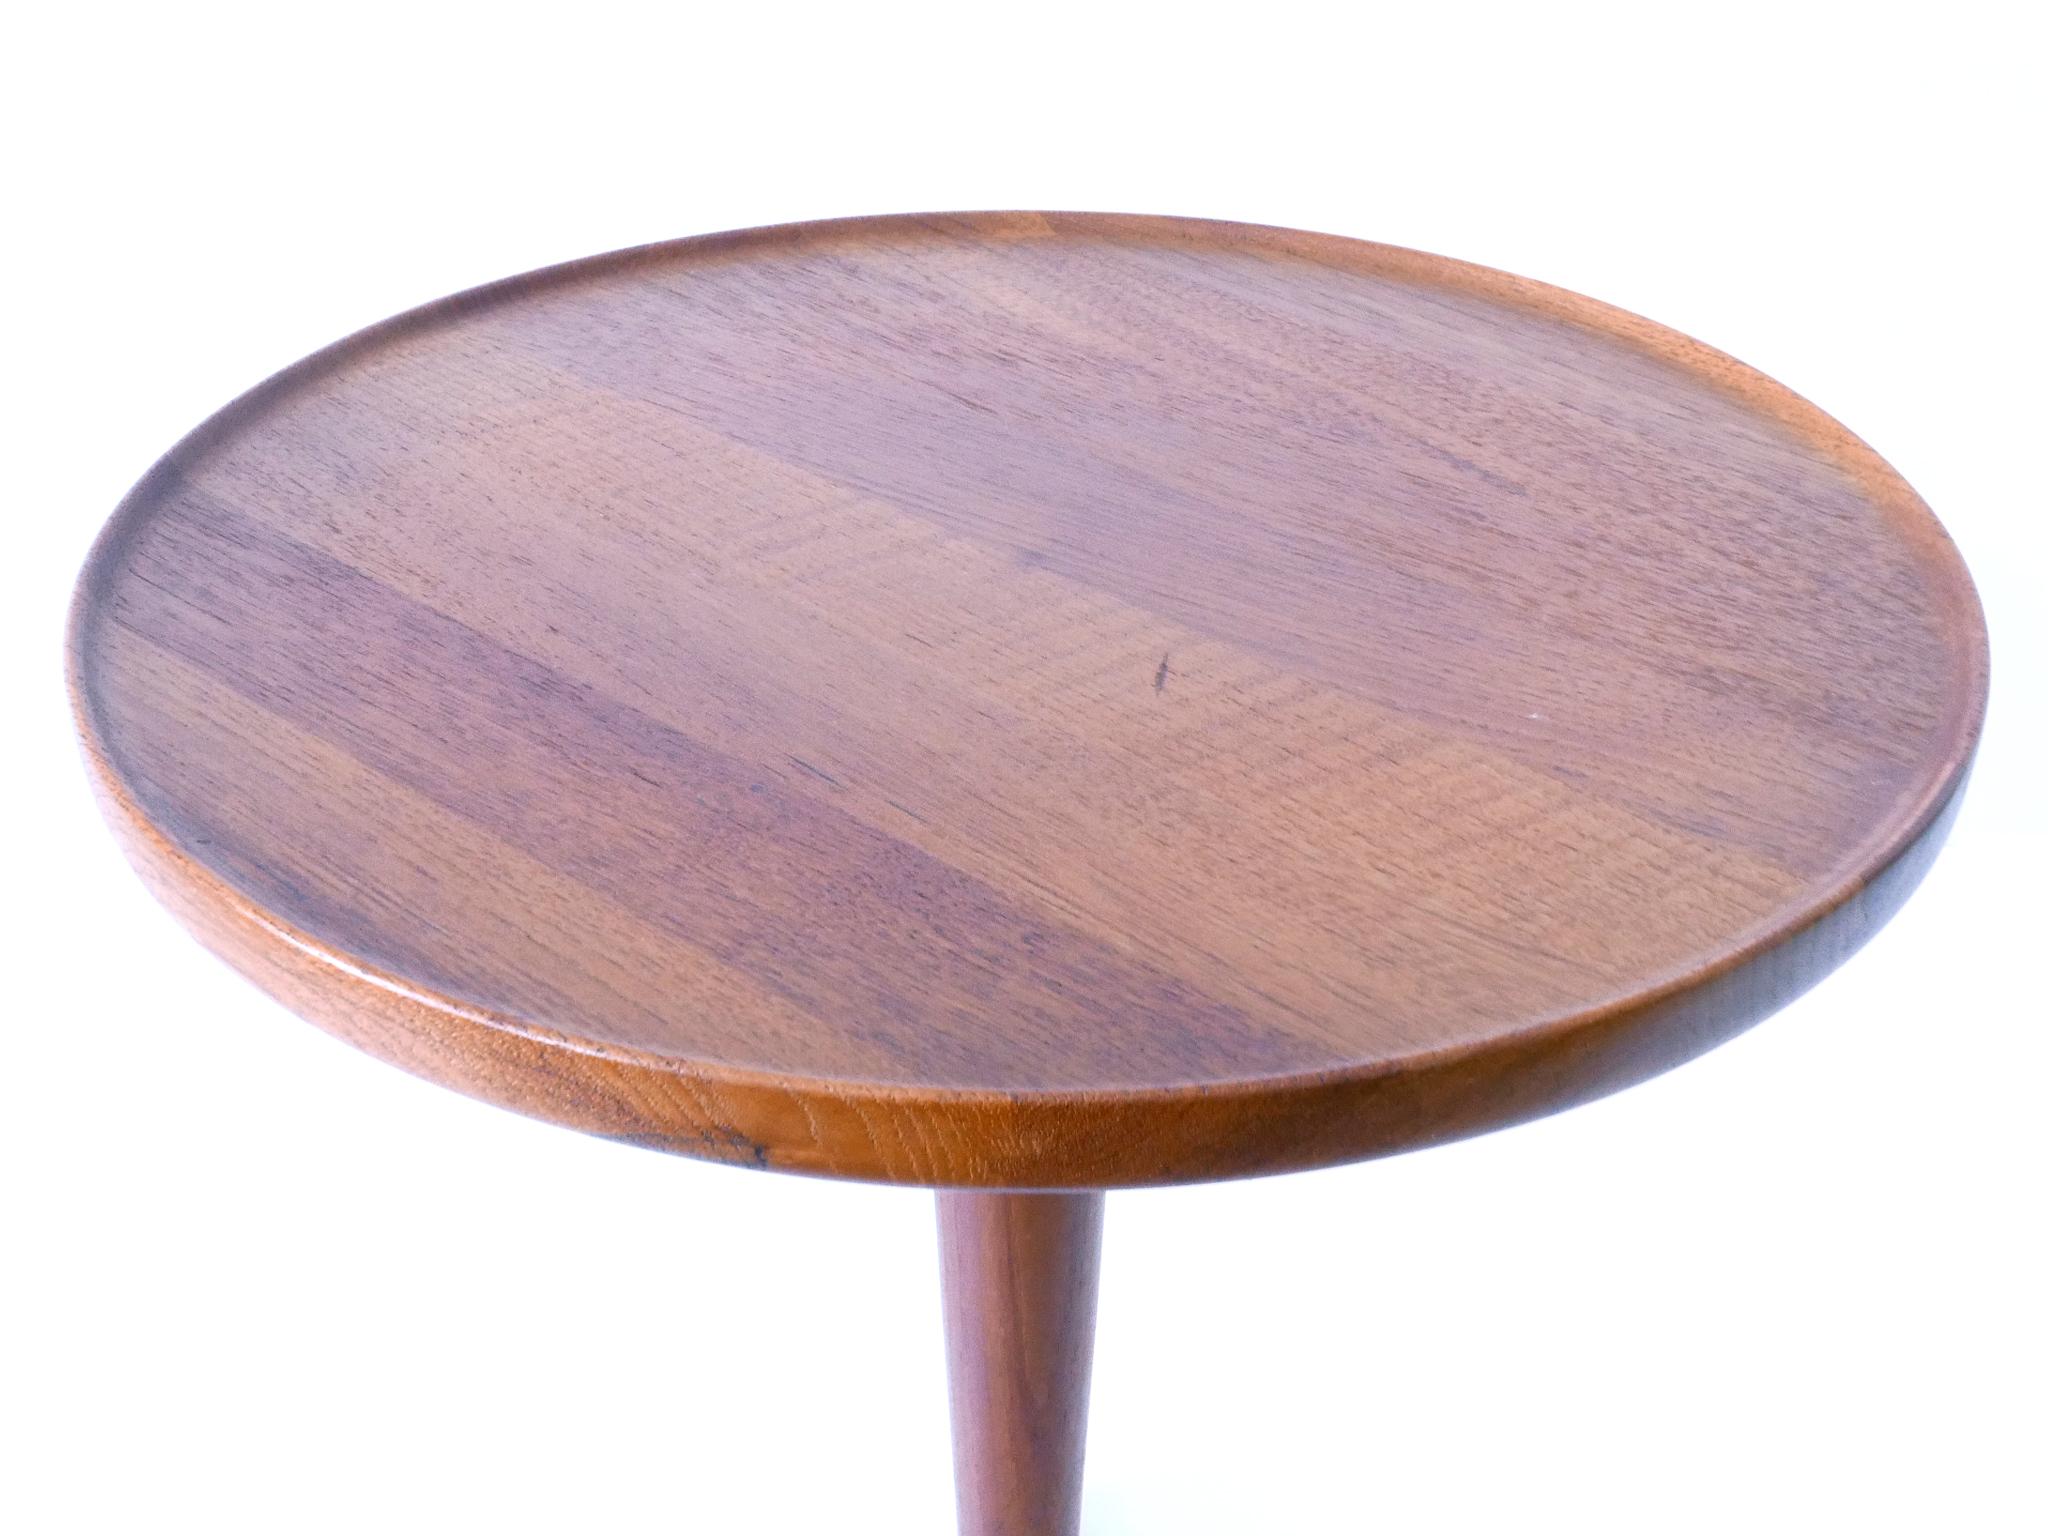 Elegant Mid-Century Modern Teak Side Table by Hans C. Andersen for Artek 1960s For Sale 9